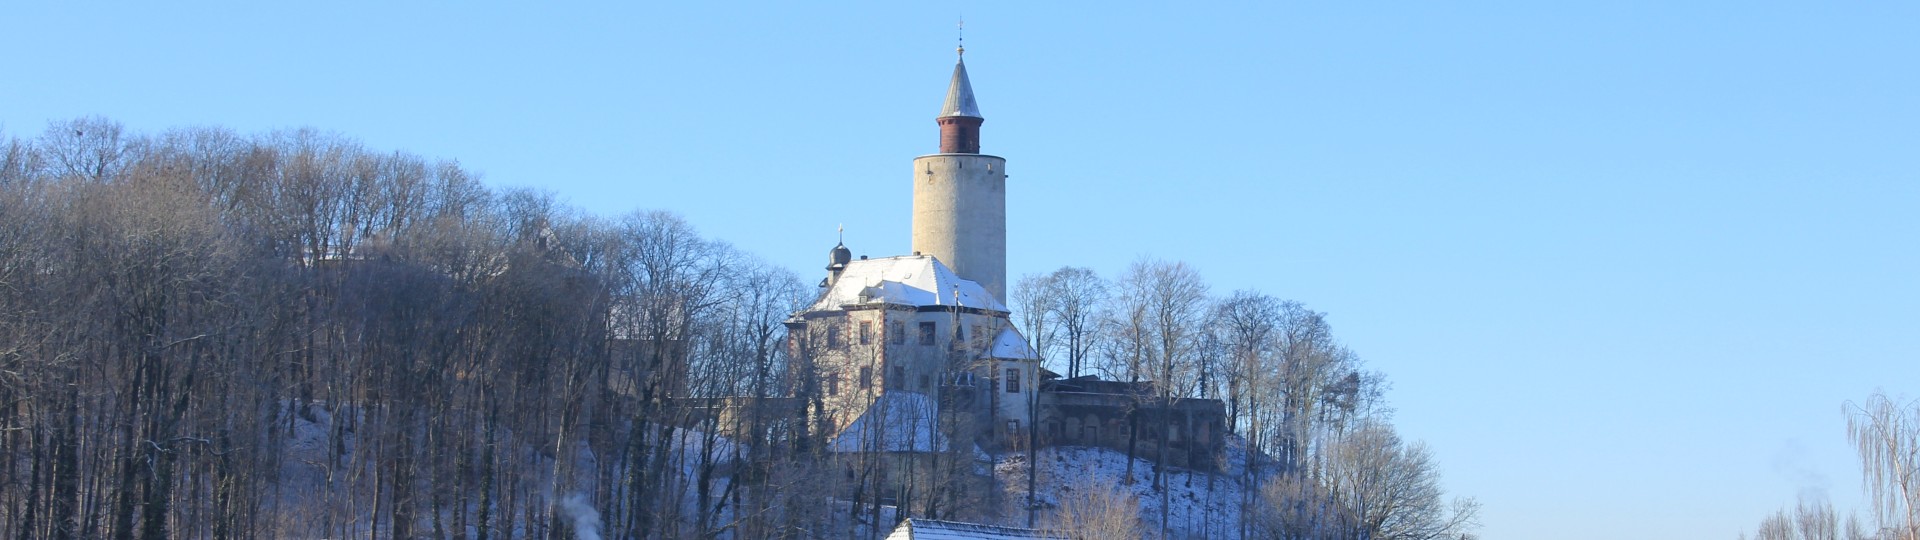 Burg Posterstein im Winter